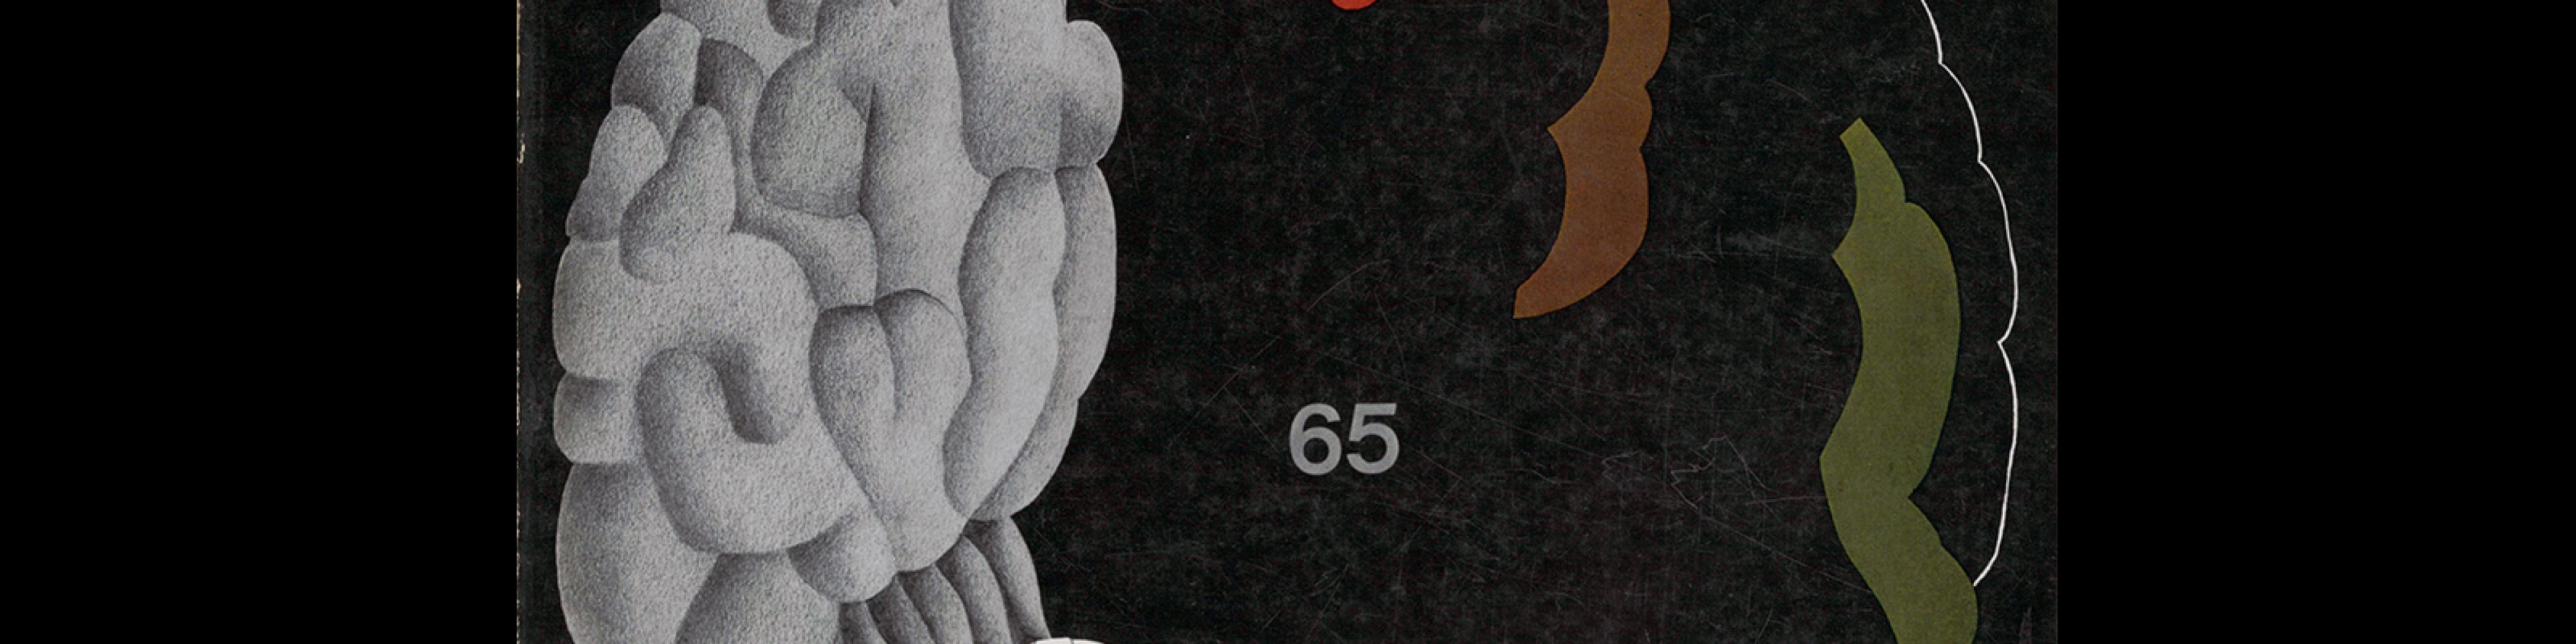 Graphis 65, 1956. Cover design by Gottfried Honegger